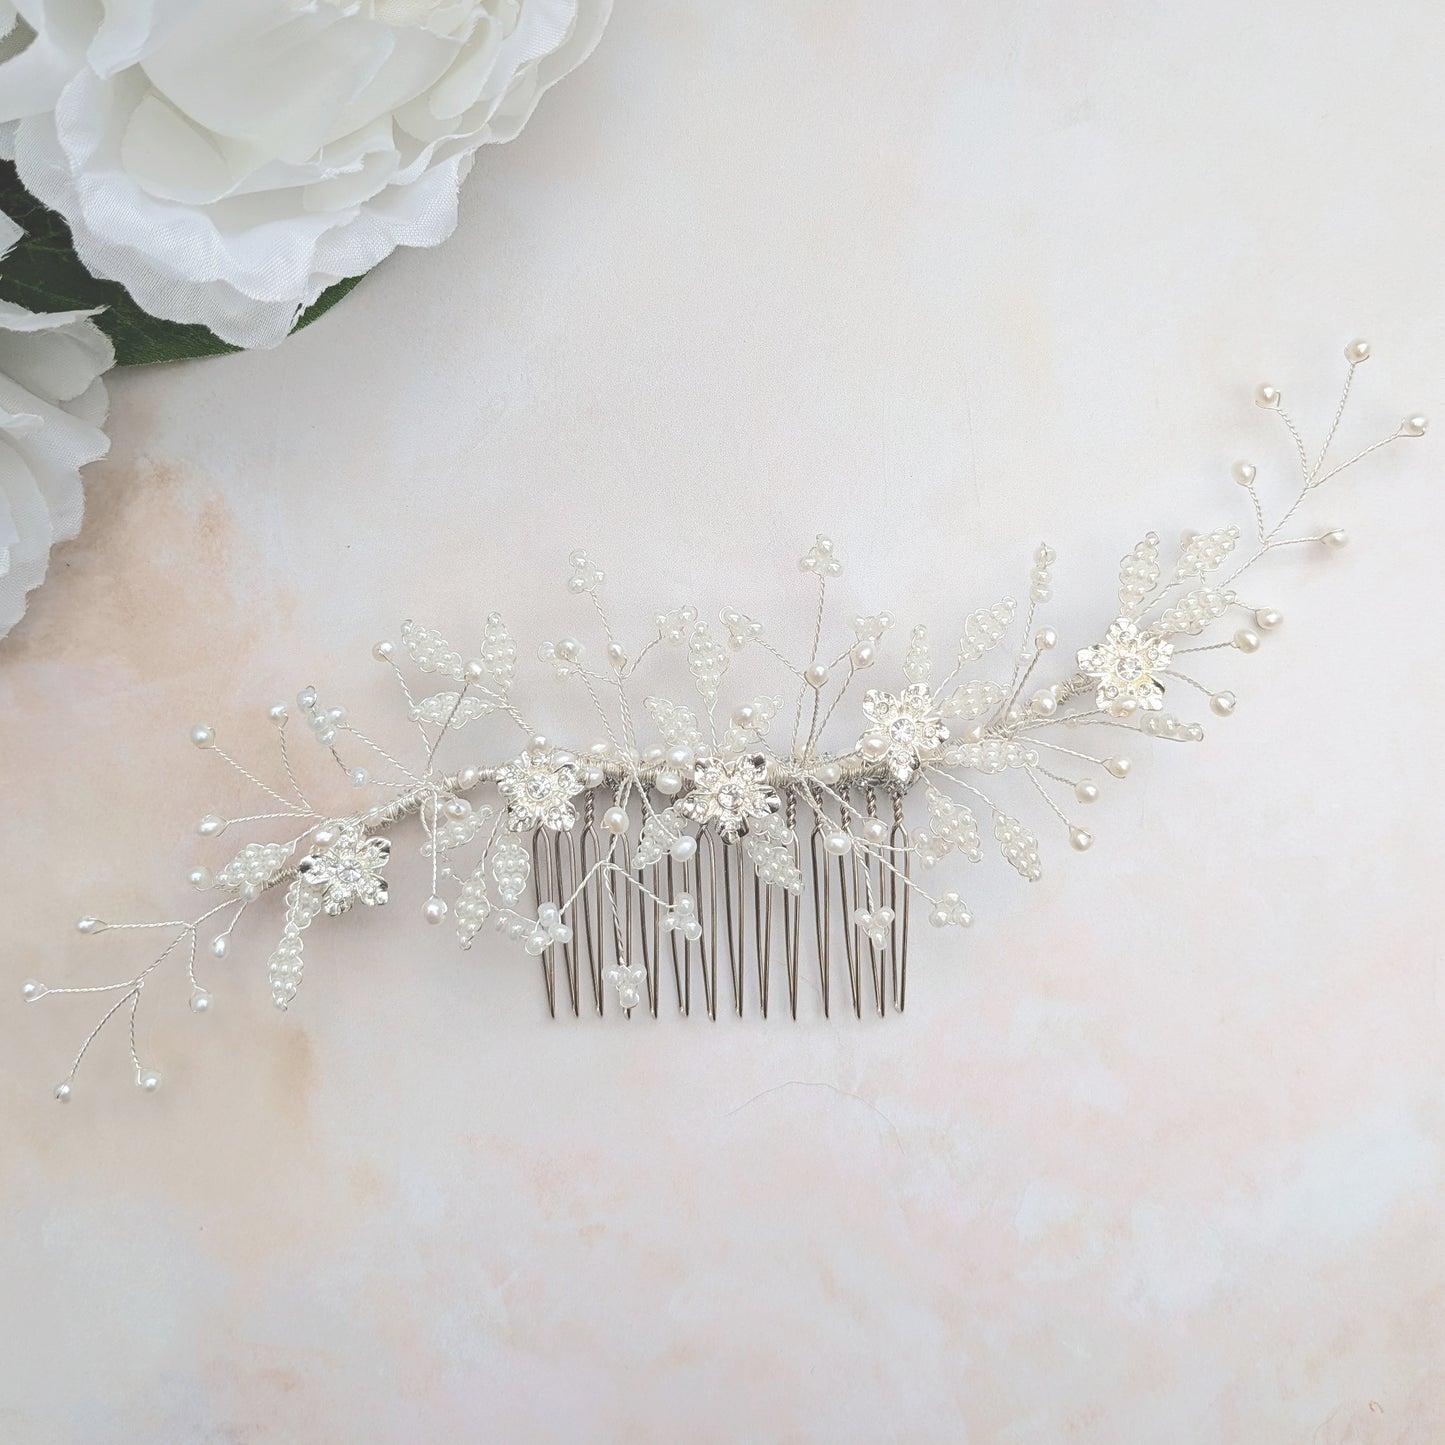 Floral bridal headpiece for weddings - Susie Warner